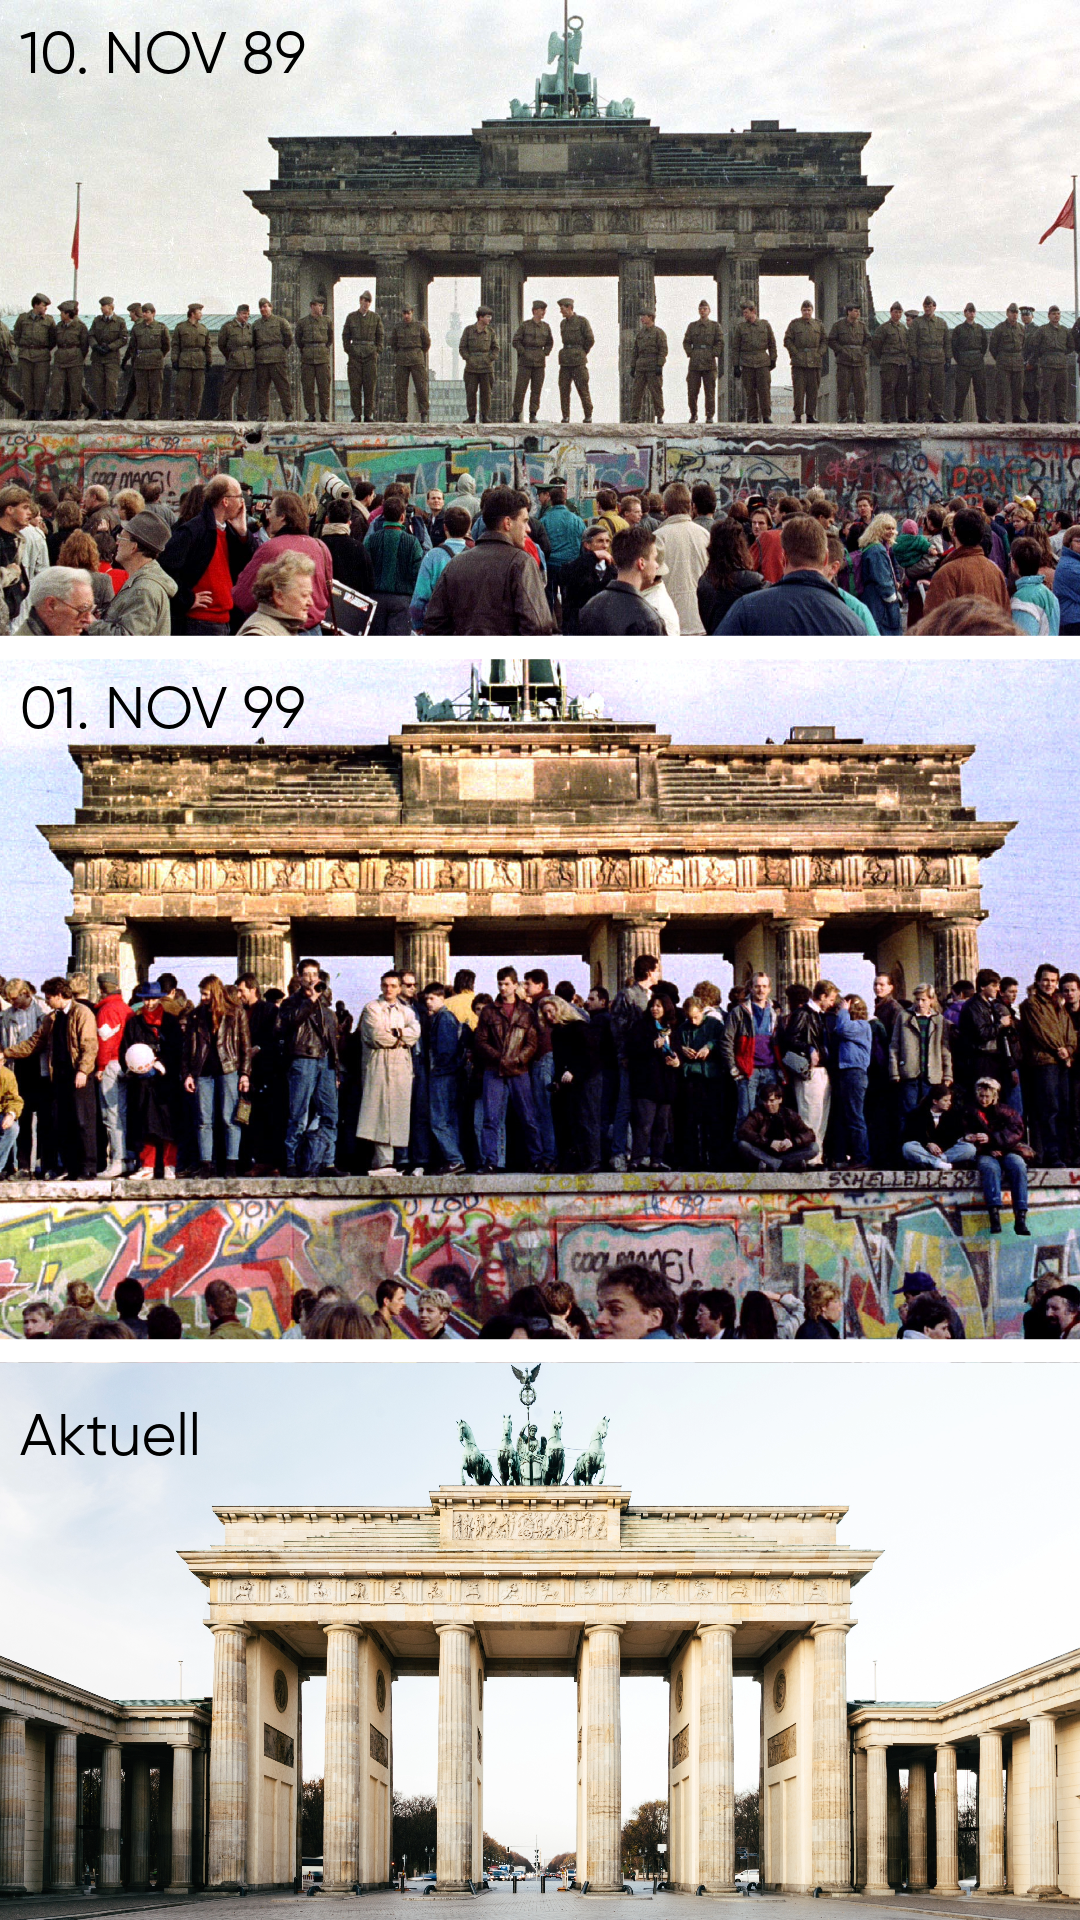 Ostberliner Grenzsoldaten stehen auf diesem Archivfoto vom 11. November 1989 auf der Berliner Mauer vor dem Brandenburger Tor. Ein knappes Jahr später feiern Bürger:innen die Widervereinigung. Heutzutage wurde die Mauer vor dem Brandenburger Tor entfernt.